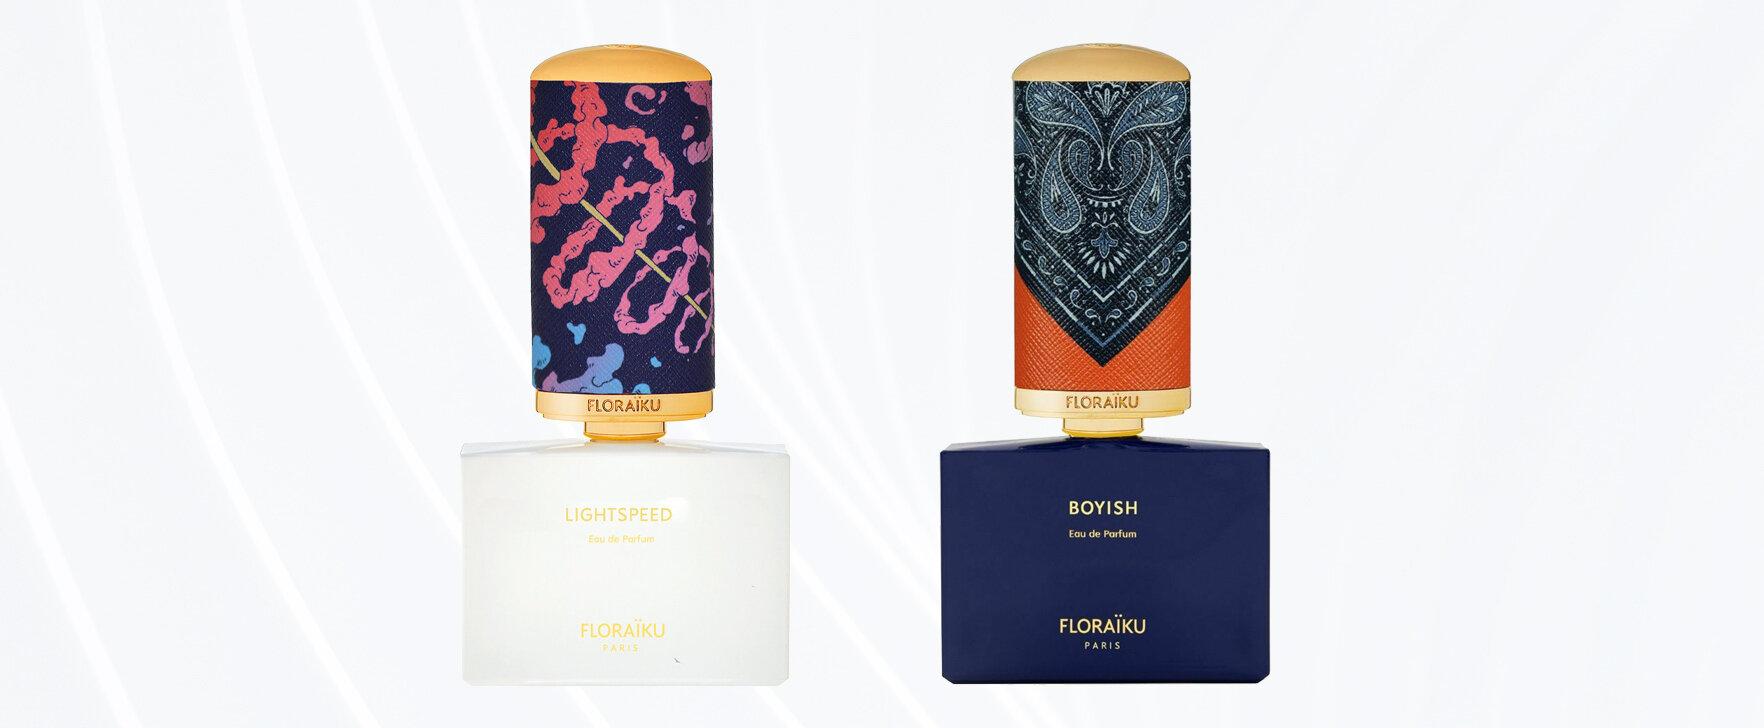 Lightspeed and Boyish: The New Eaux de Parfum From Floraïku